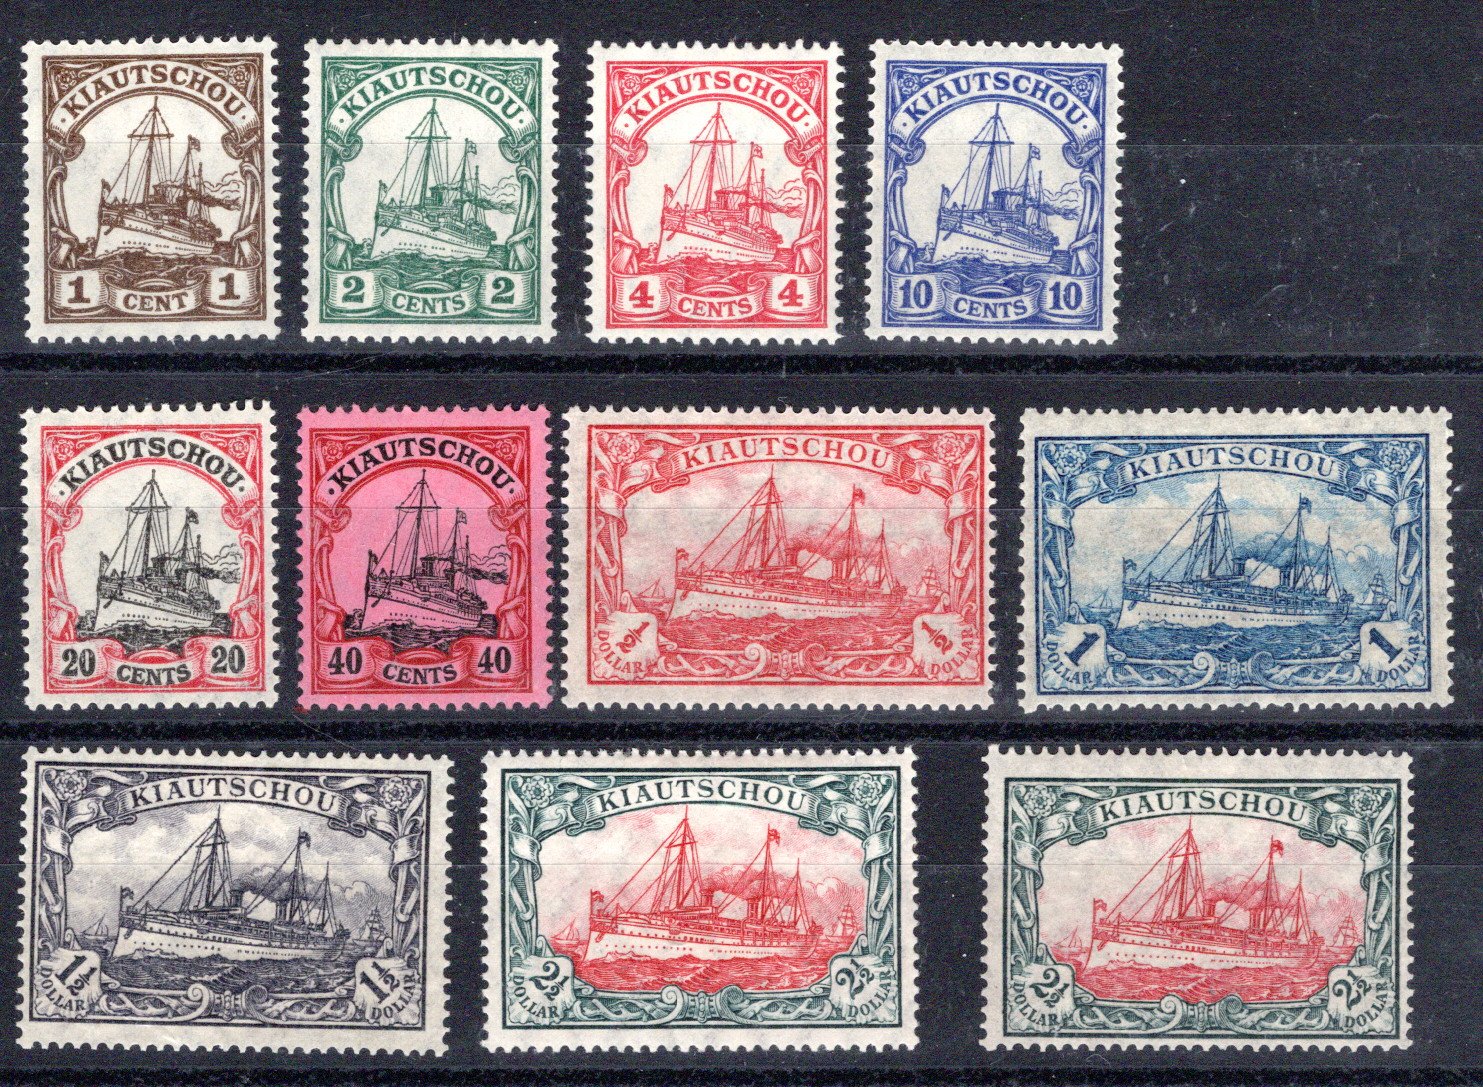 Lot 53 - British Commonwealth South Africa Zululand -  Georg Bühler Briefmarken Auktionen GmbH Georg Bühler 336 auction